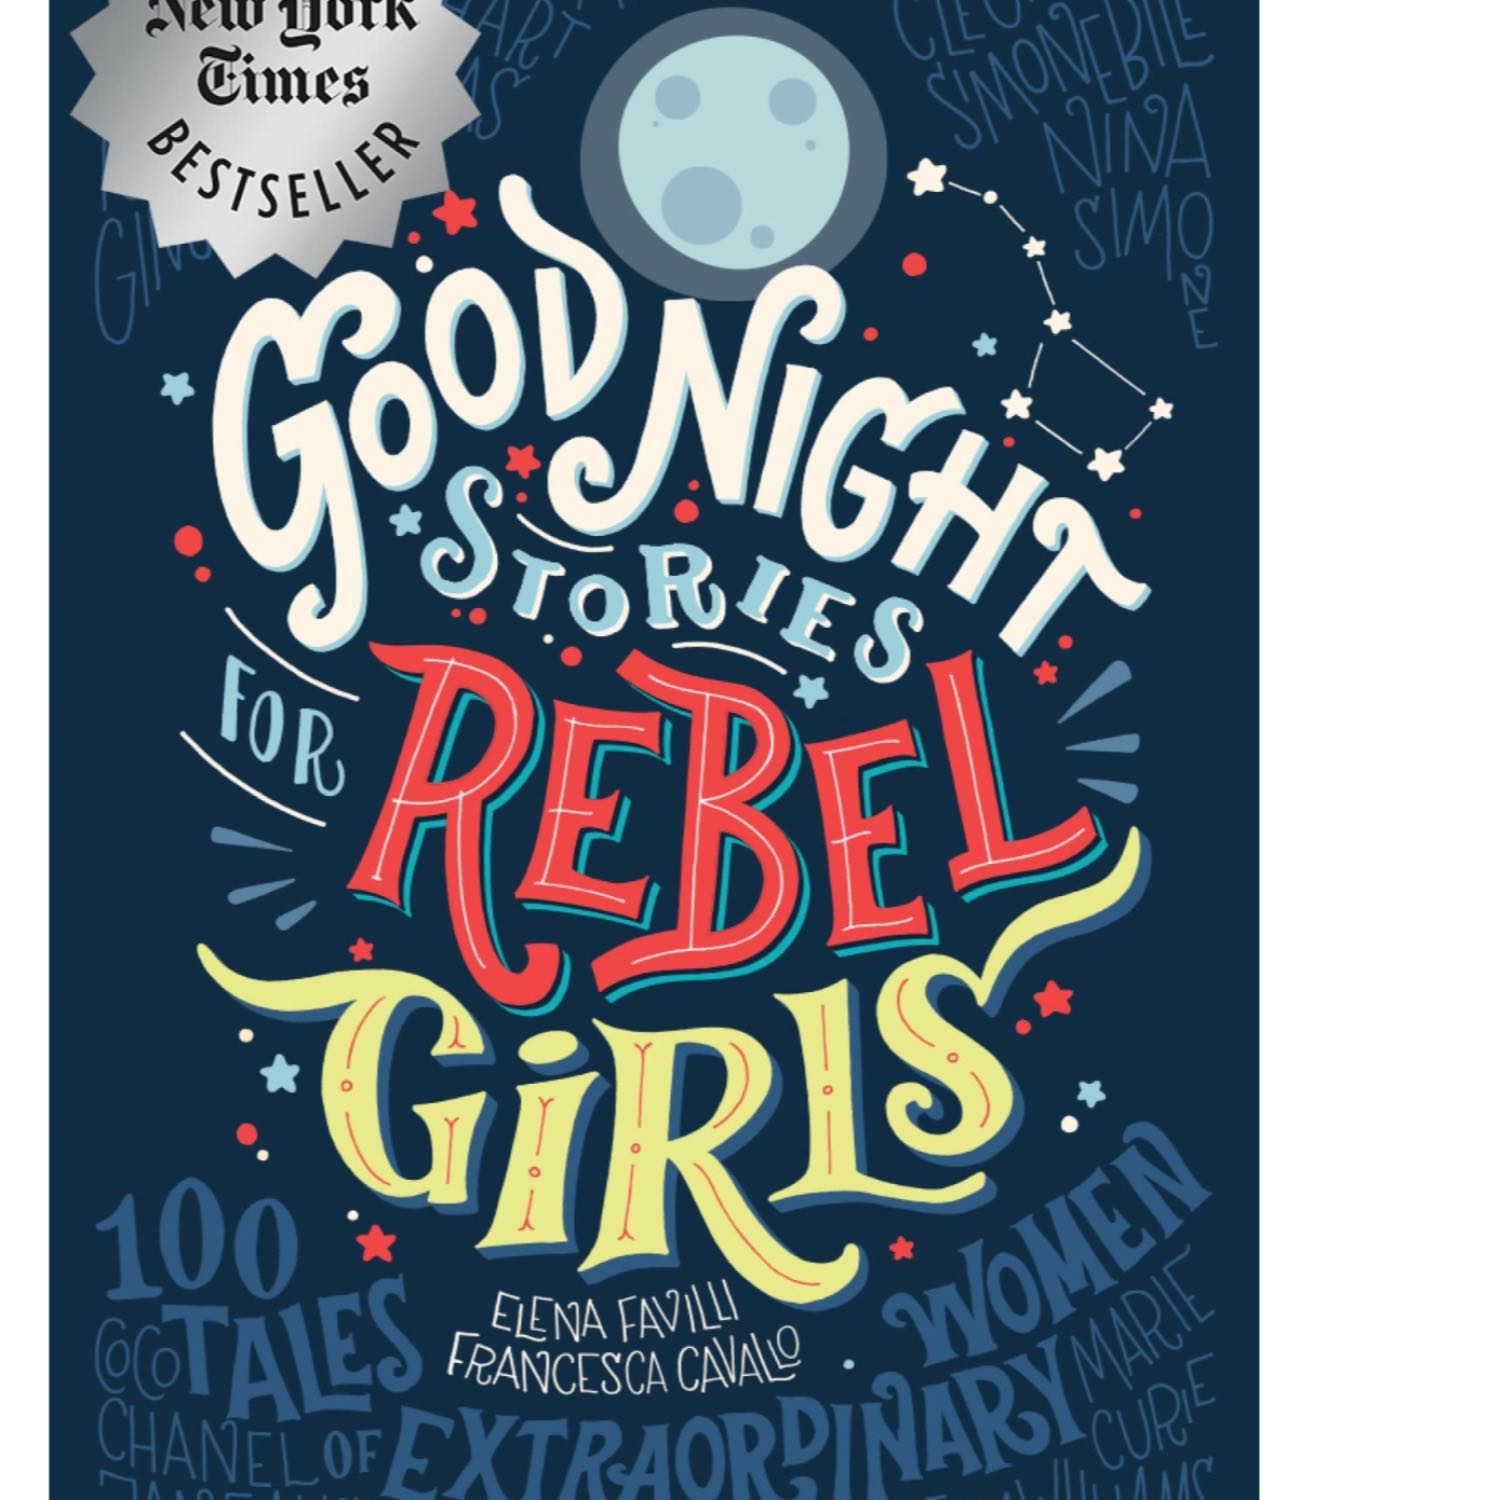 Goodnight Stories for Rebel Girls: Jane Goodall